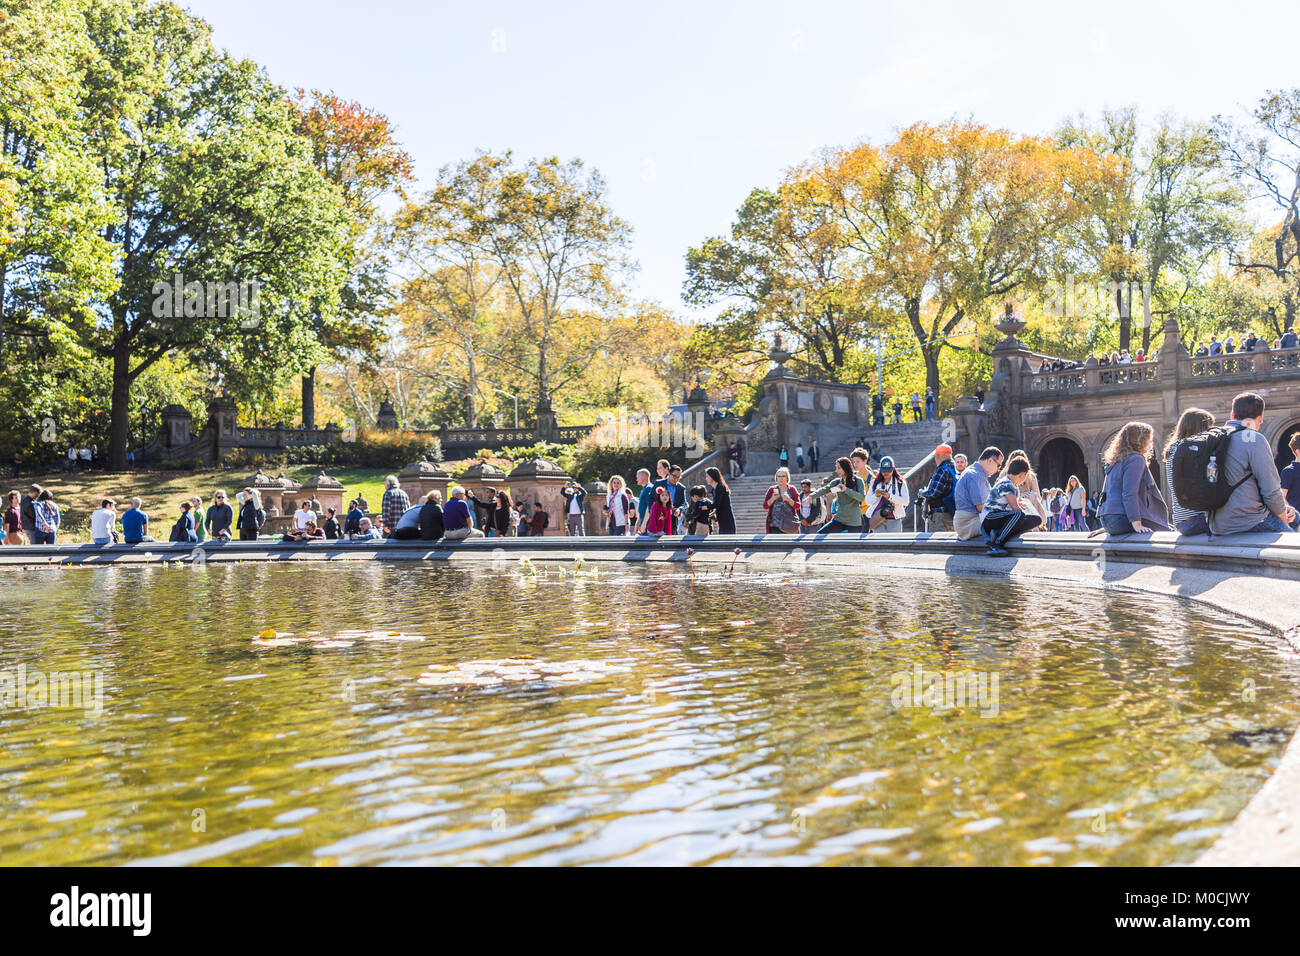 New York City, USA - Oktober 28, 2017: Manhattan NYC Central Park bei Bethesda Arcade Terrasse mit Brunnen, Masse von Menschen zu Fuß durch einen Tunnel an sonnigen d Stockfoto